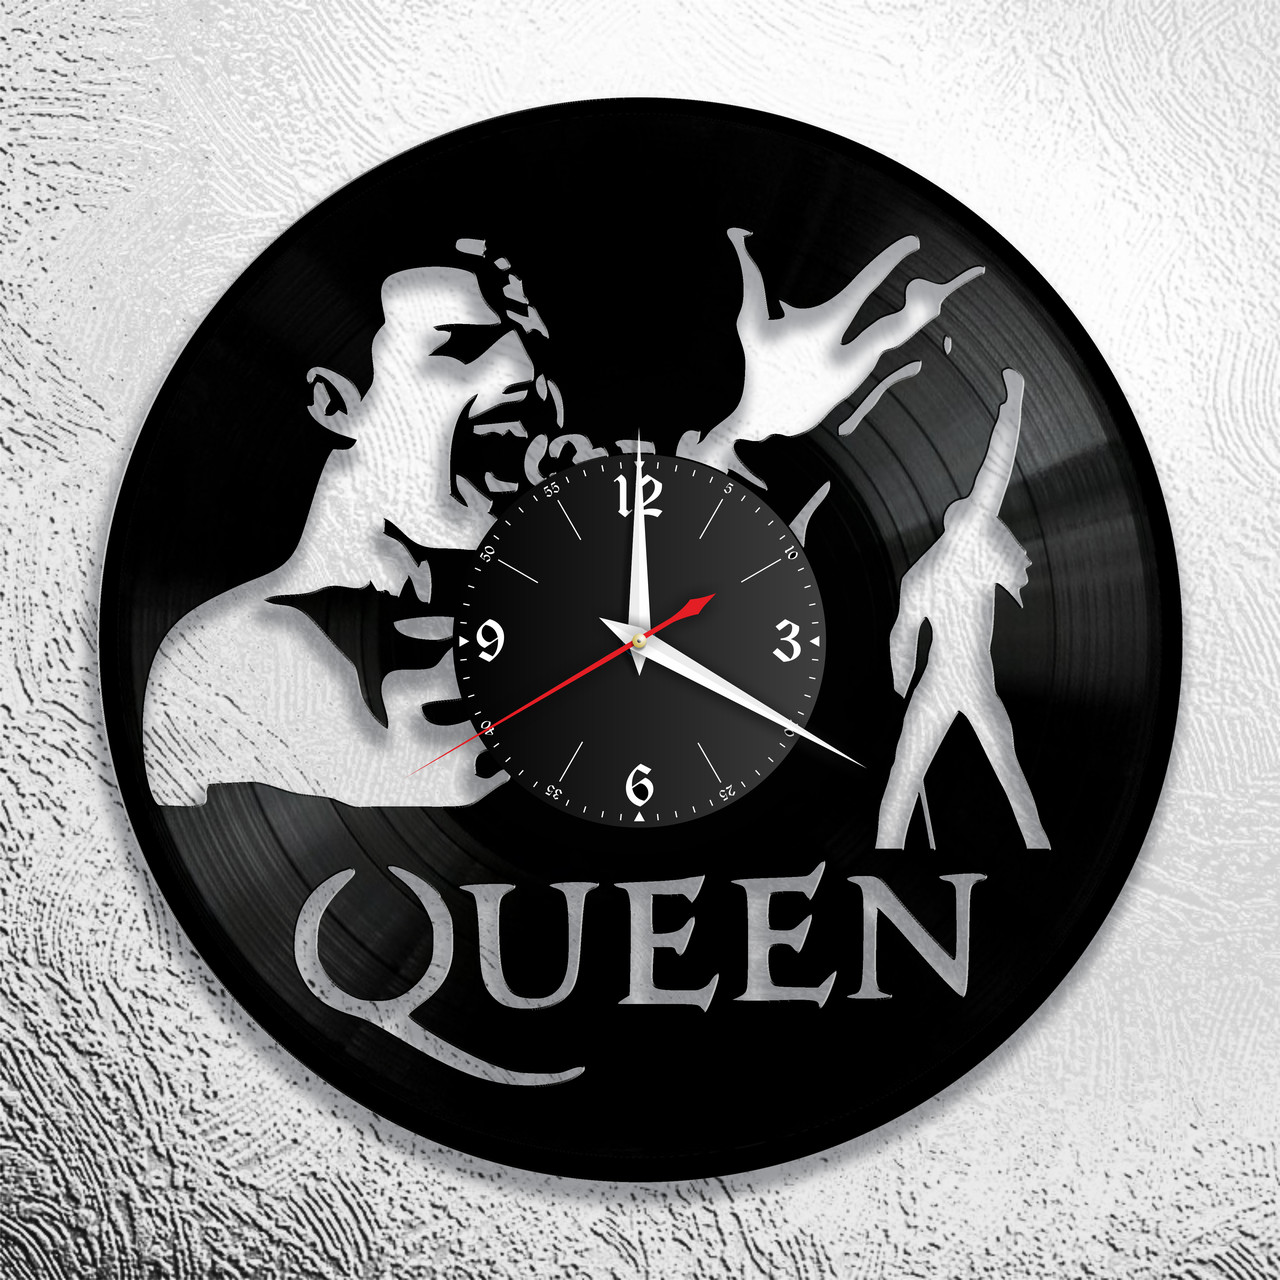 Оригинальные часы из виниловых пластинок "Queen"  версия 6, фото 1